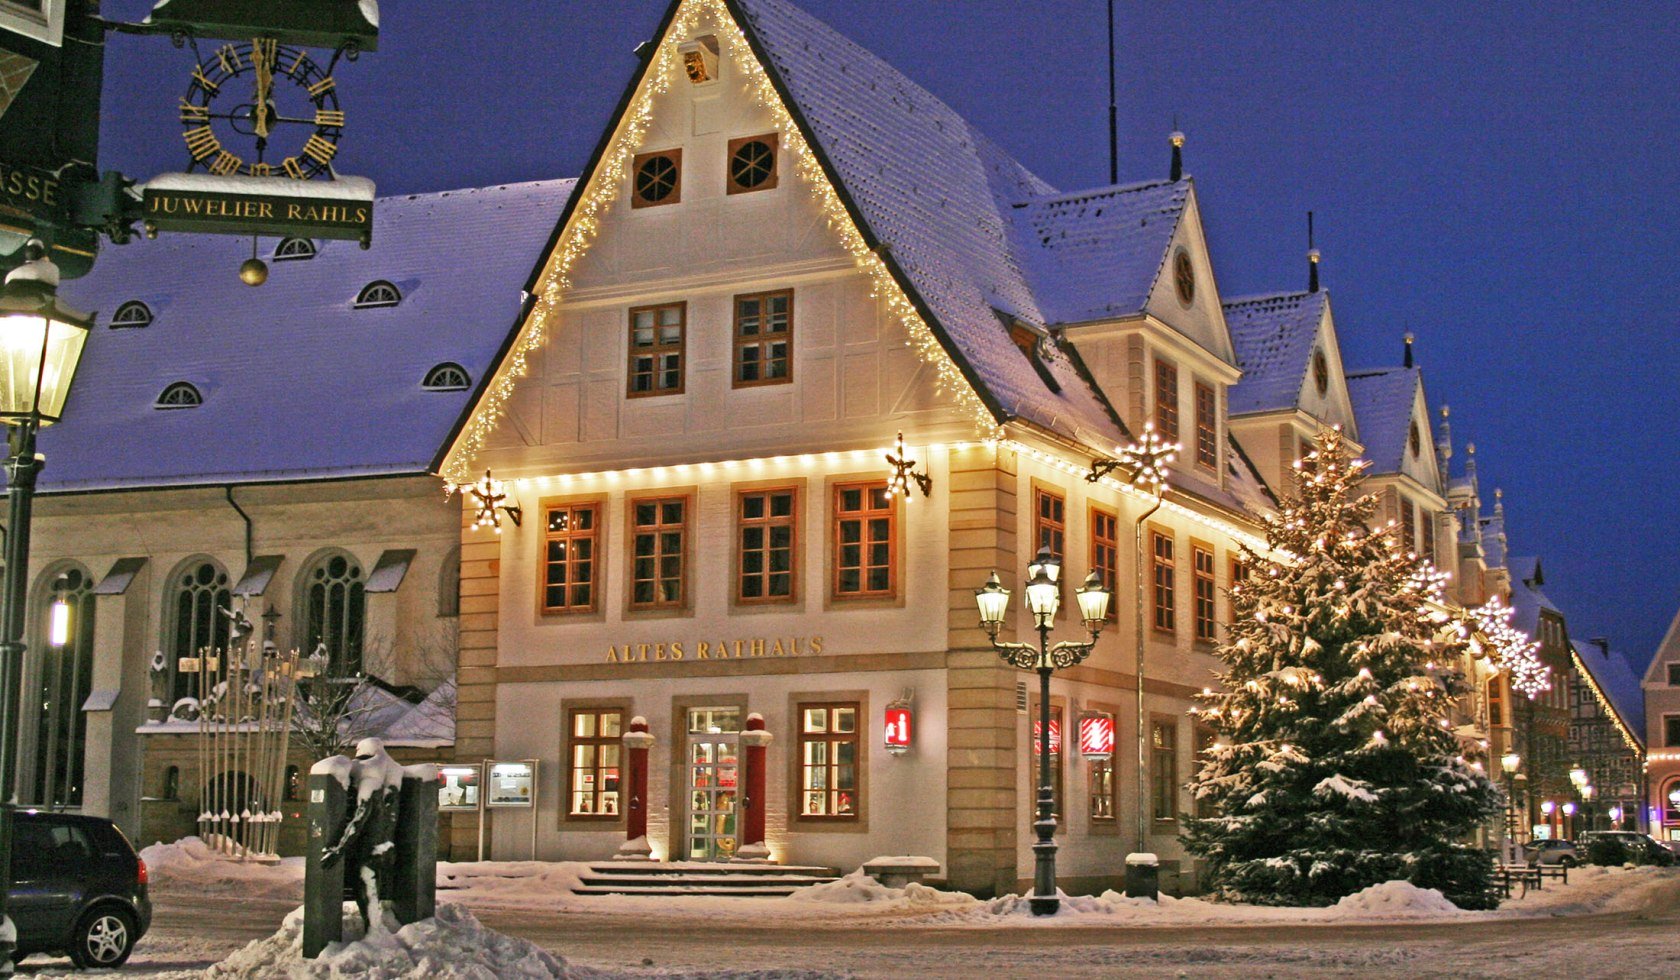 Das alte Rathaus in Celle im Schnee, © Celle Tourismus und Marketing GmbH/ K. Behre